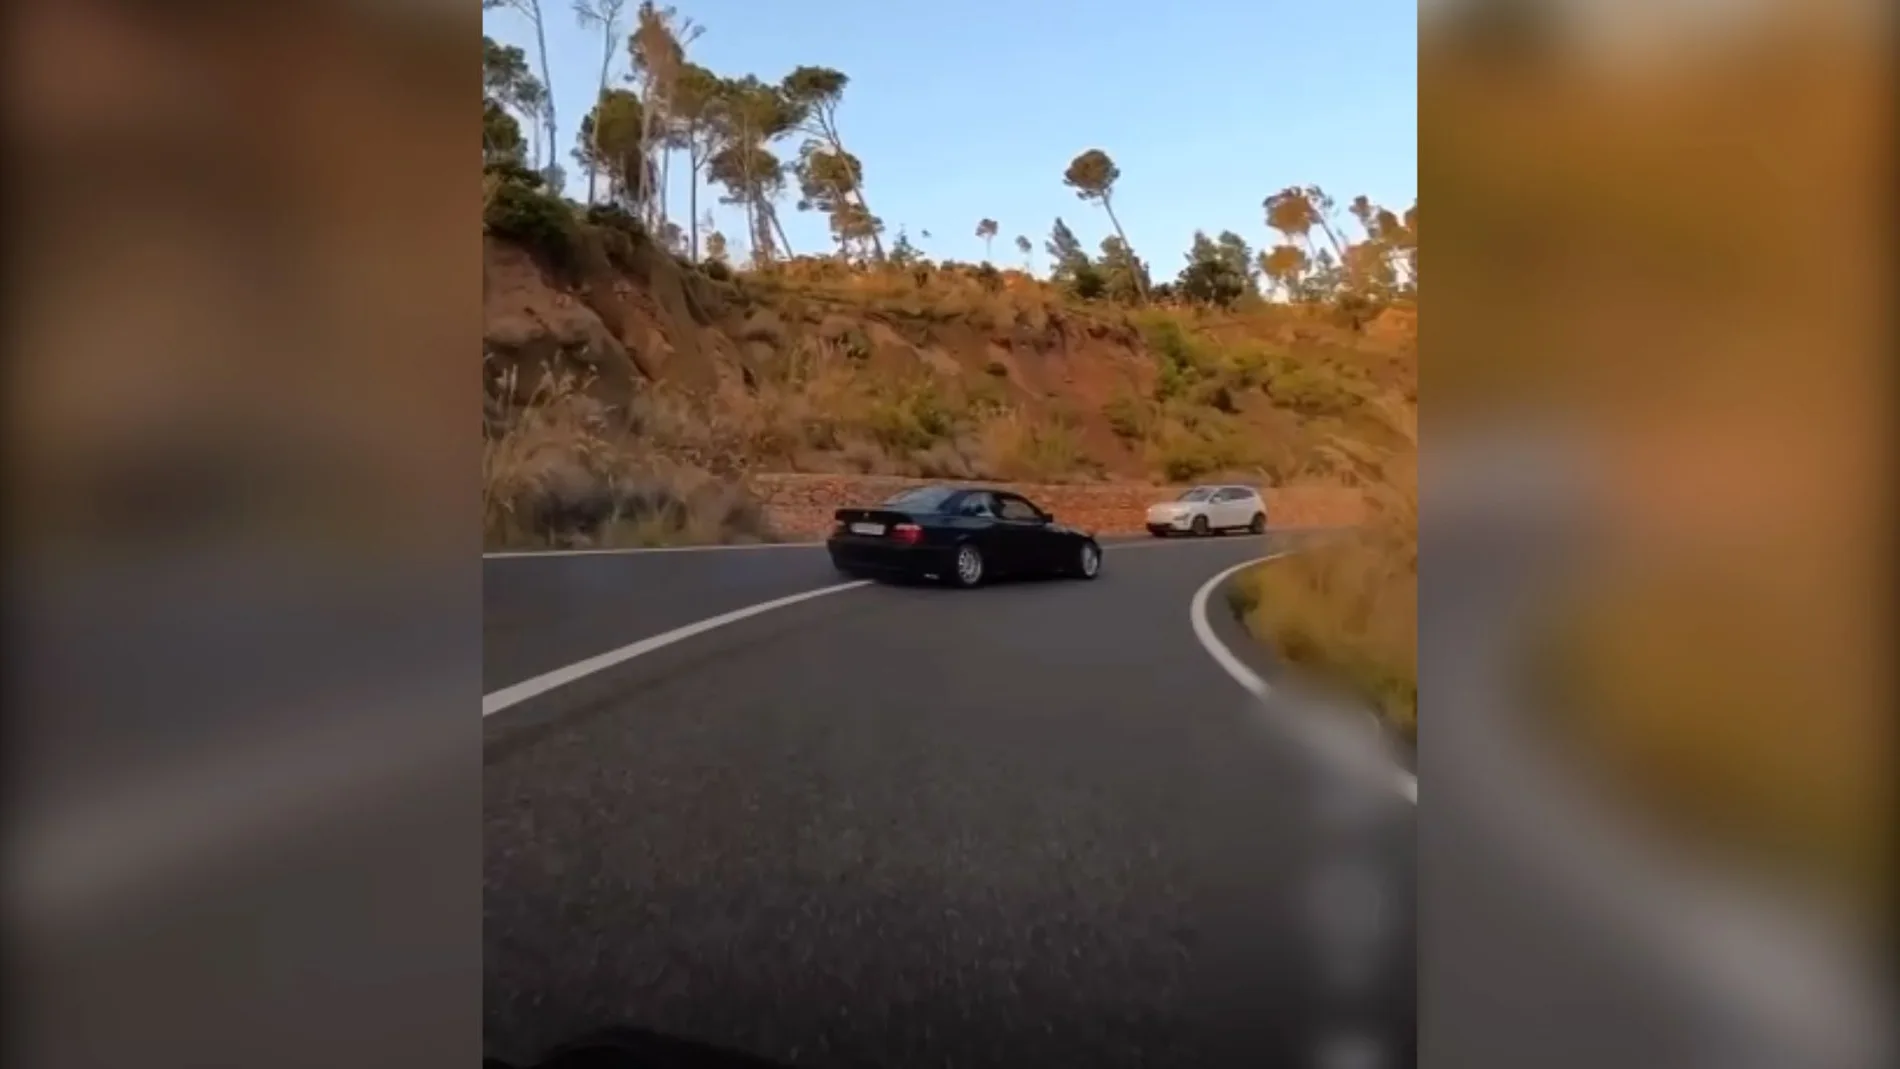 Imagen tomada del video en la que se muestra el coche derrapando e invadiendo parte del carril contrario